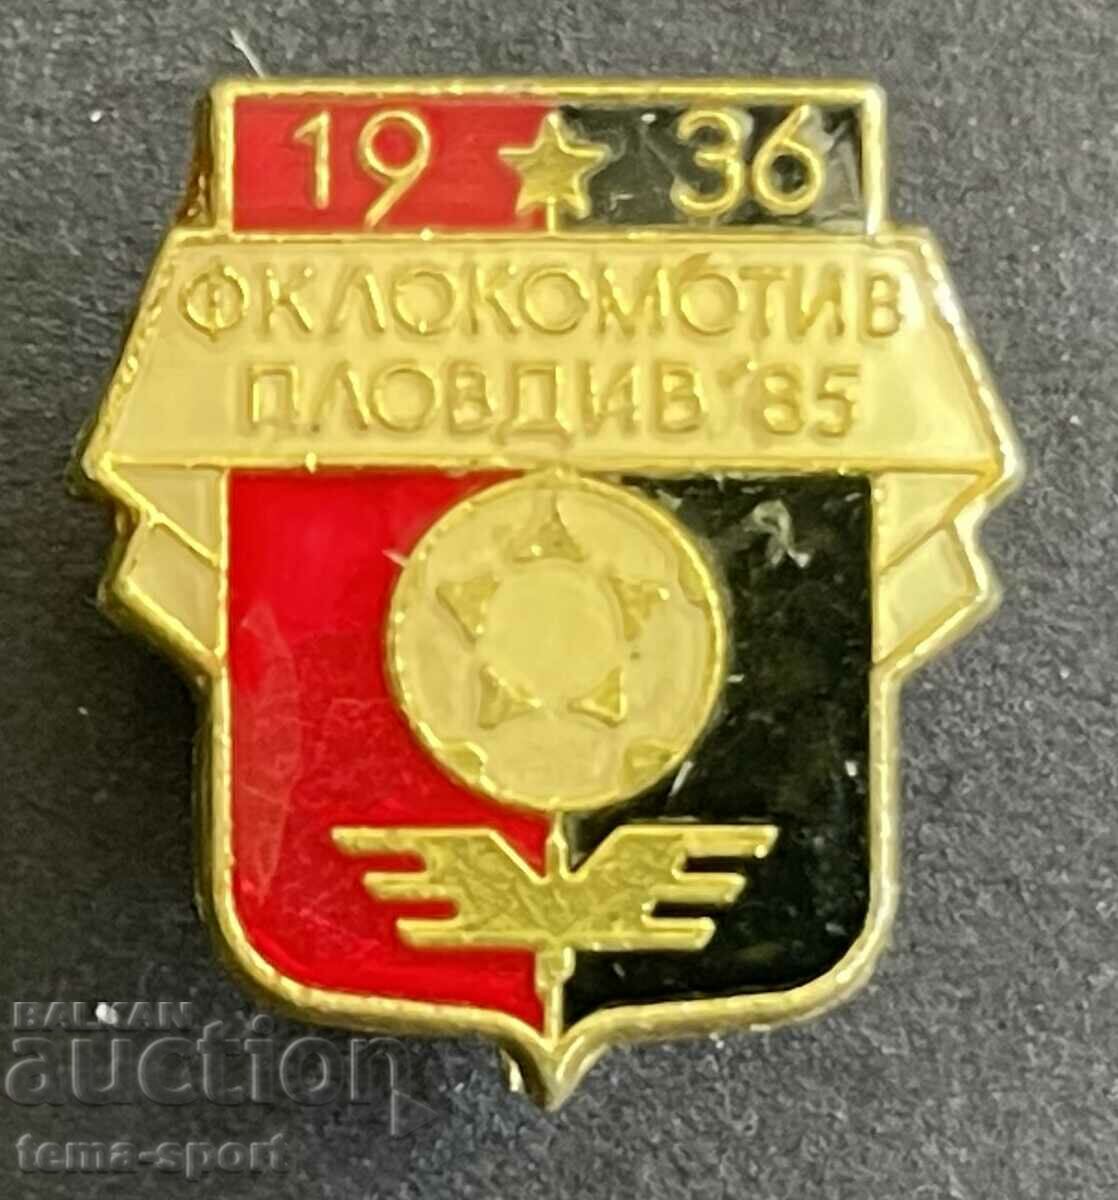 214 Bulgaria sign football club Lokomotiv Plovdiv 1985.